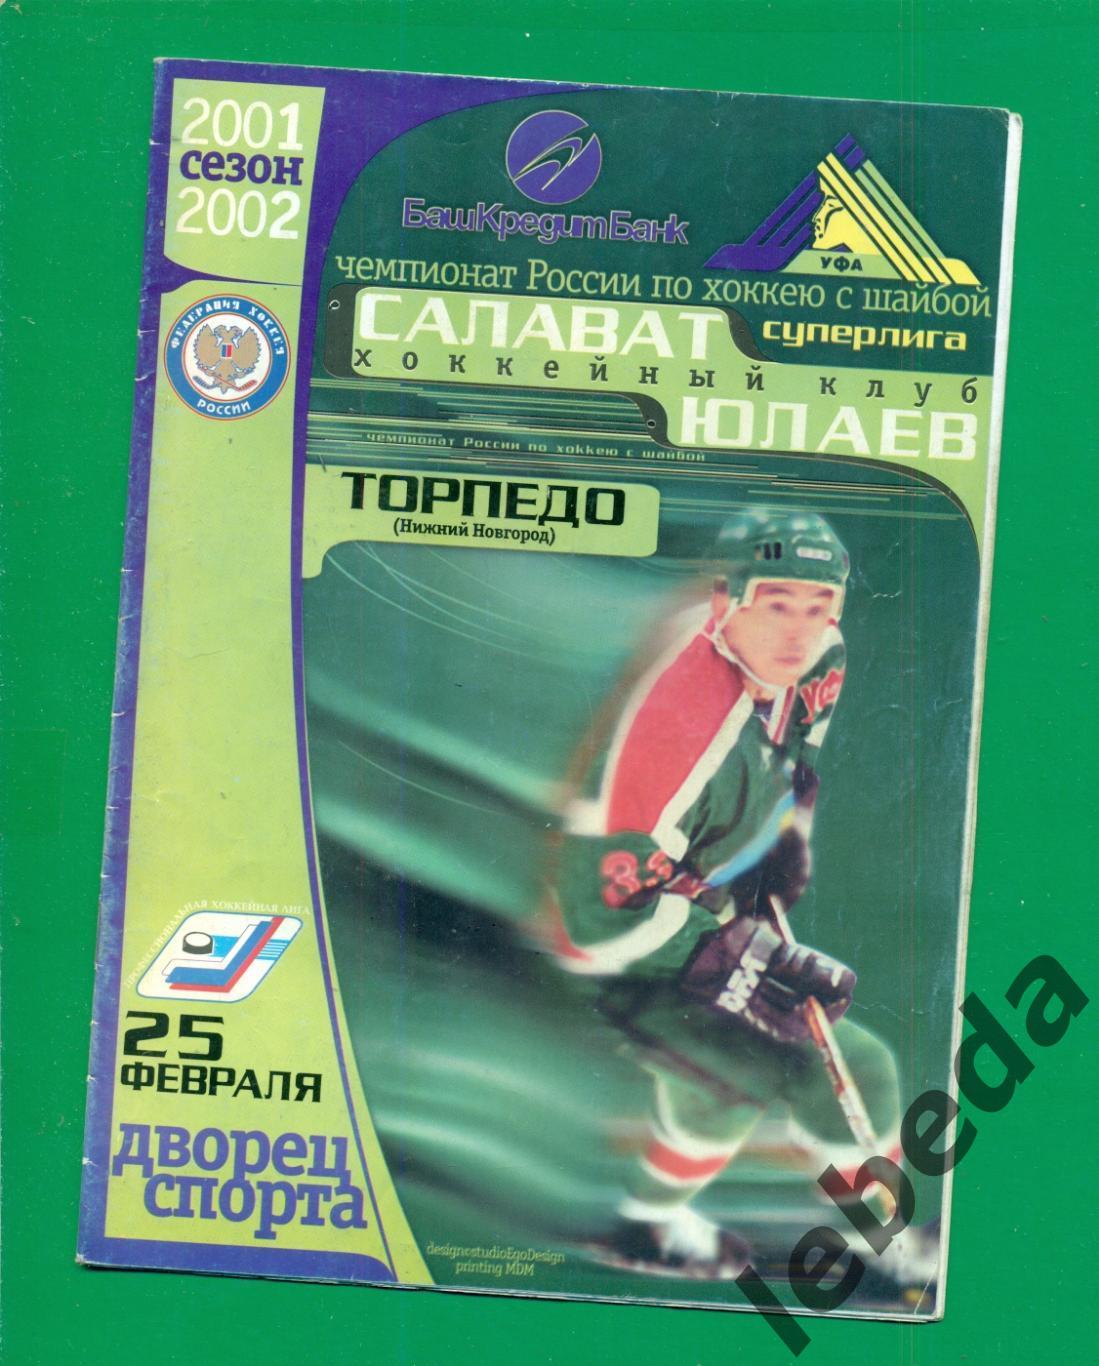 Салават Юлаев ( Уфа ) - Торпедо Нижний Новгород - 2001 / 2002 г. ( 25.02.02.)